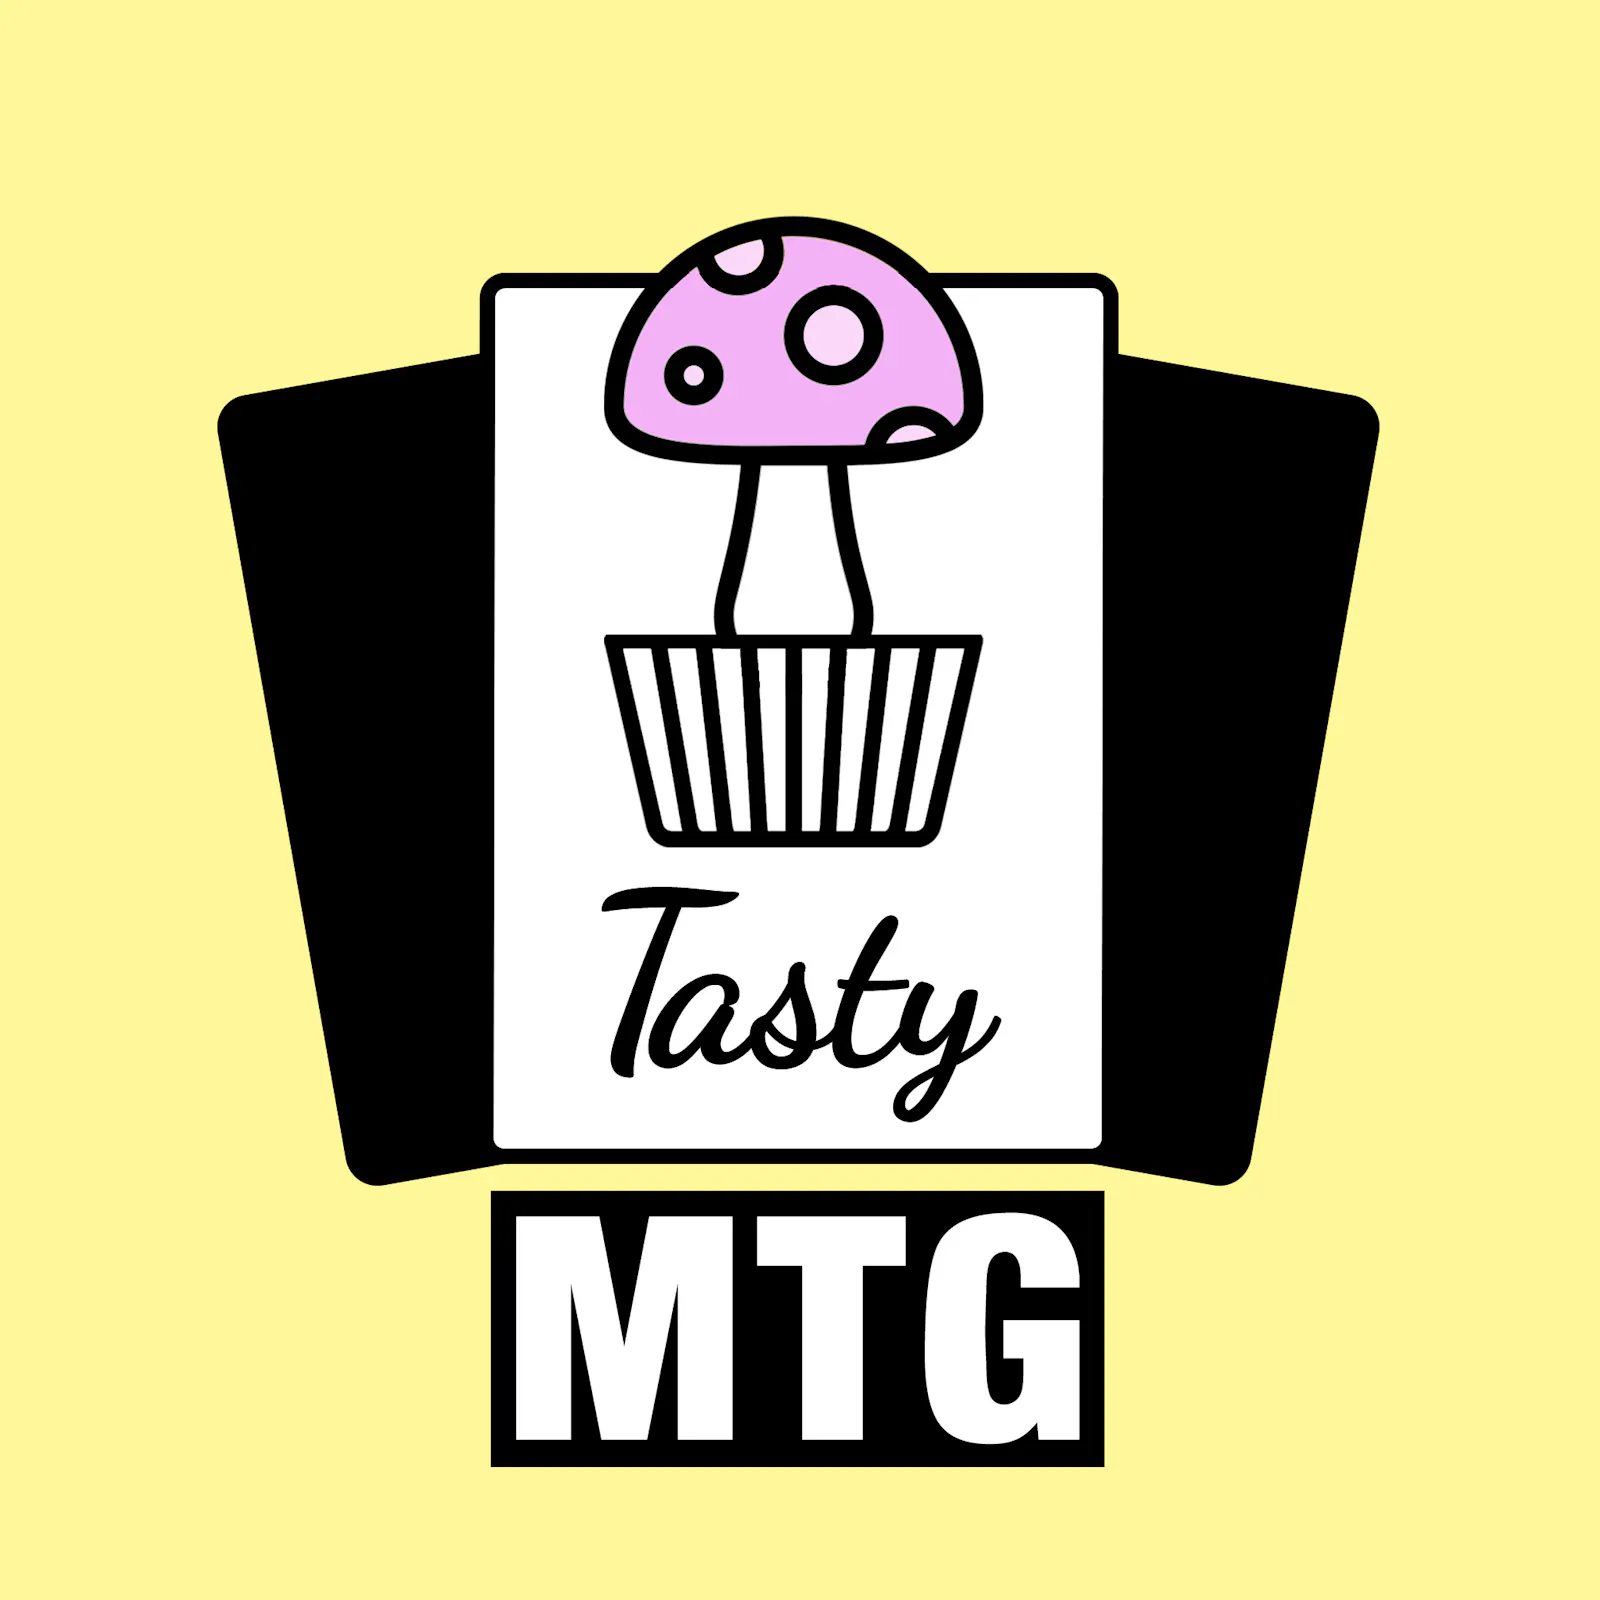 Das Logo zur aktuellen Folge: Der Tasty-MTG-Muffin ist ein Pilz.